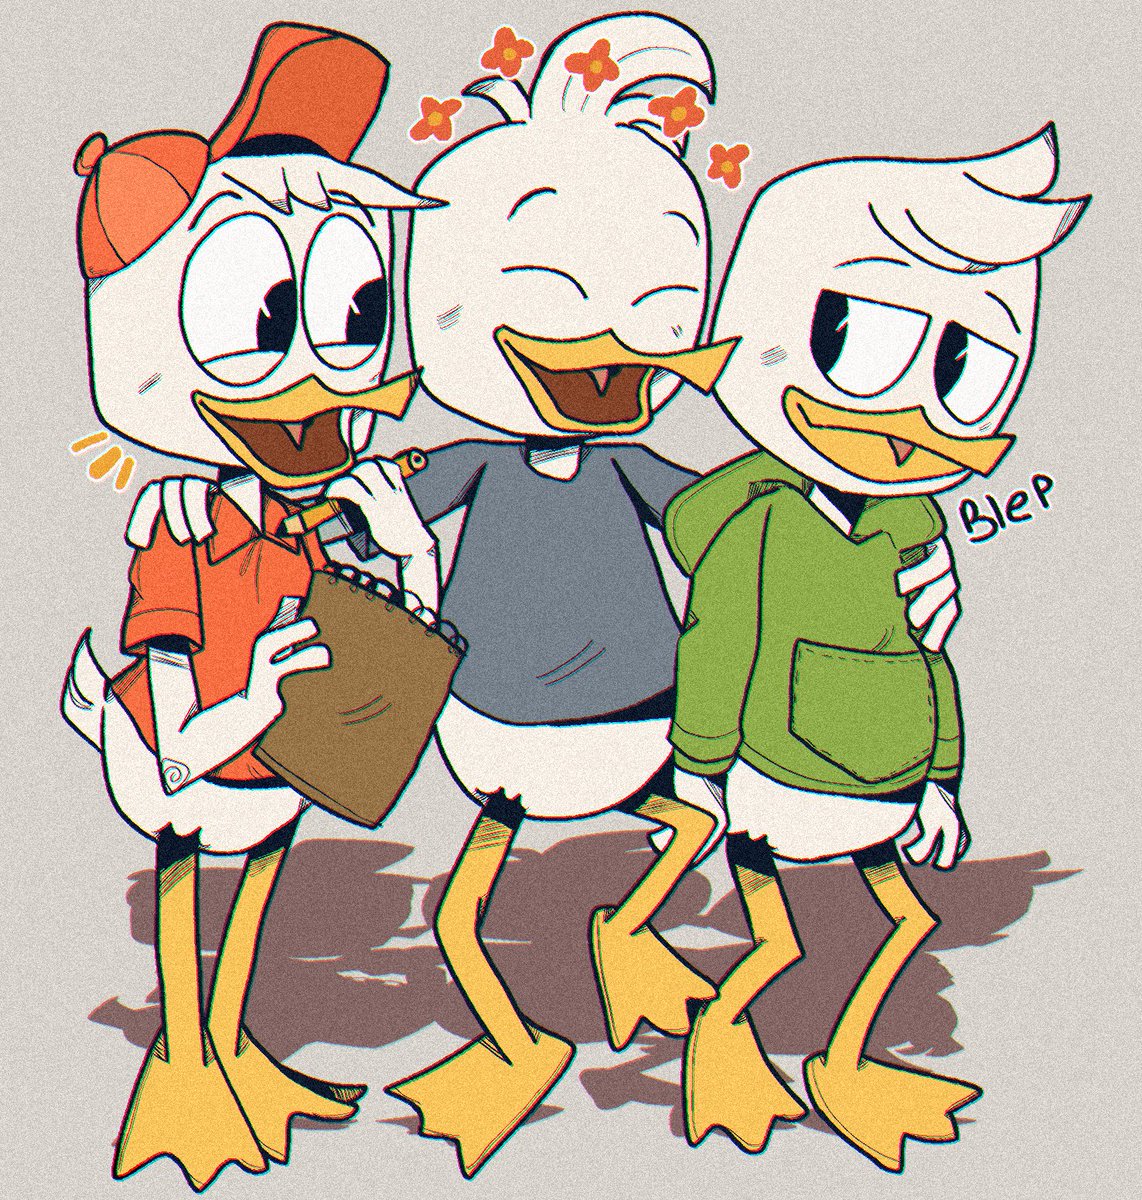 Duck triplets :)
#DuckTales #ducktalesfanart #disney #art 
#hueyduck #deweyduck #louieduck #joojdraws